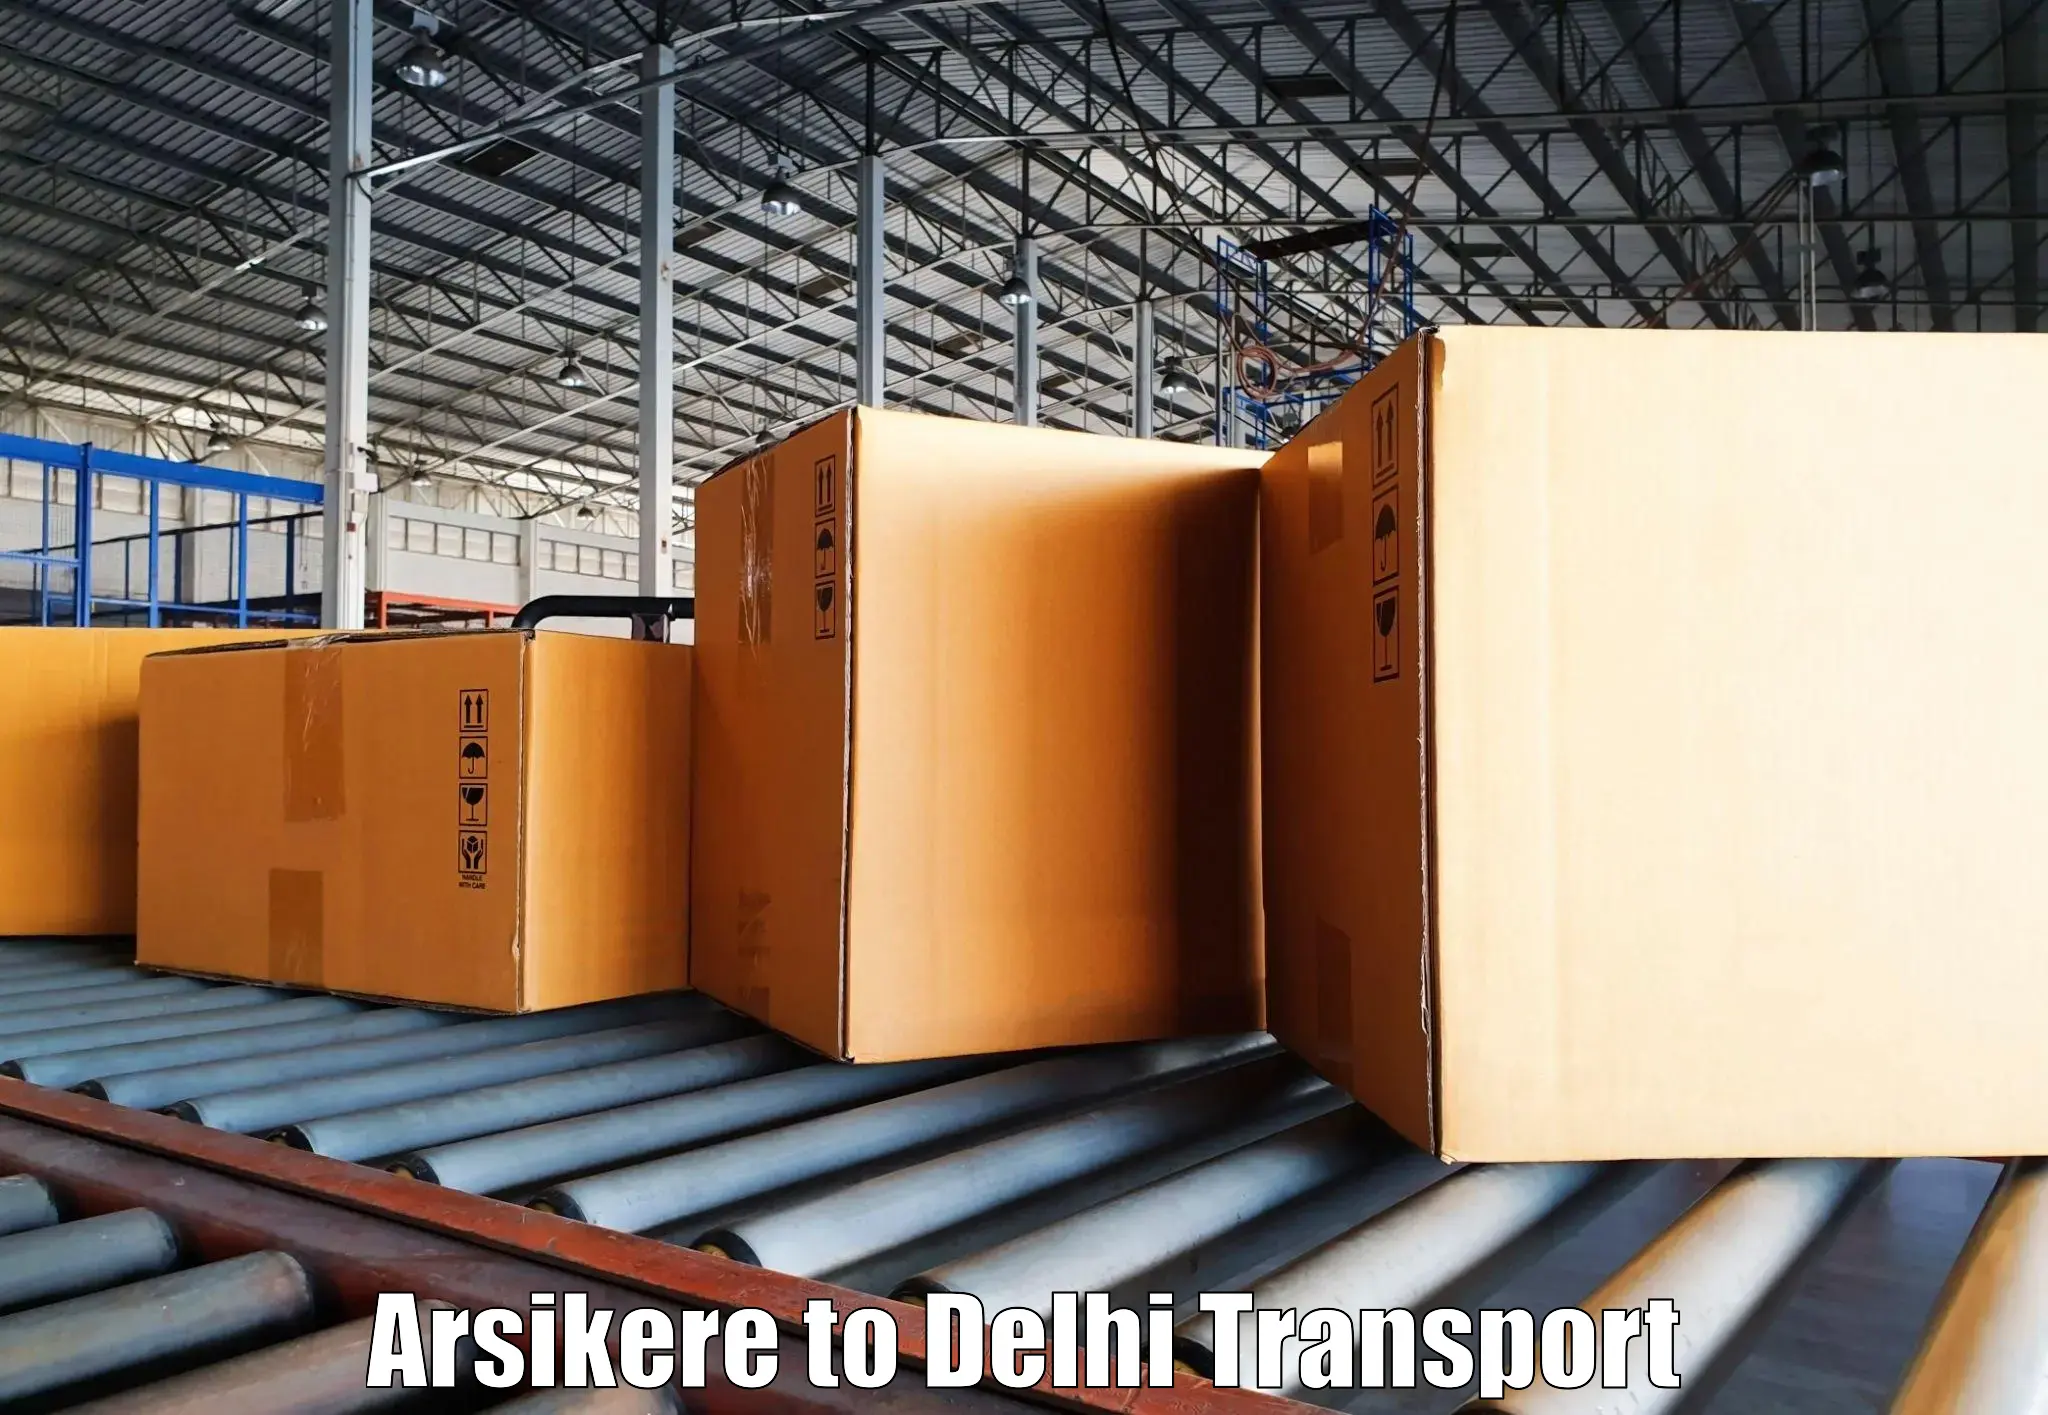 Interstate transport services Arsikere to Delhi